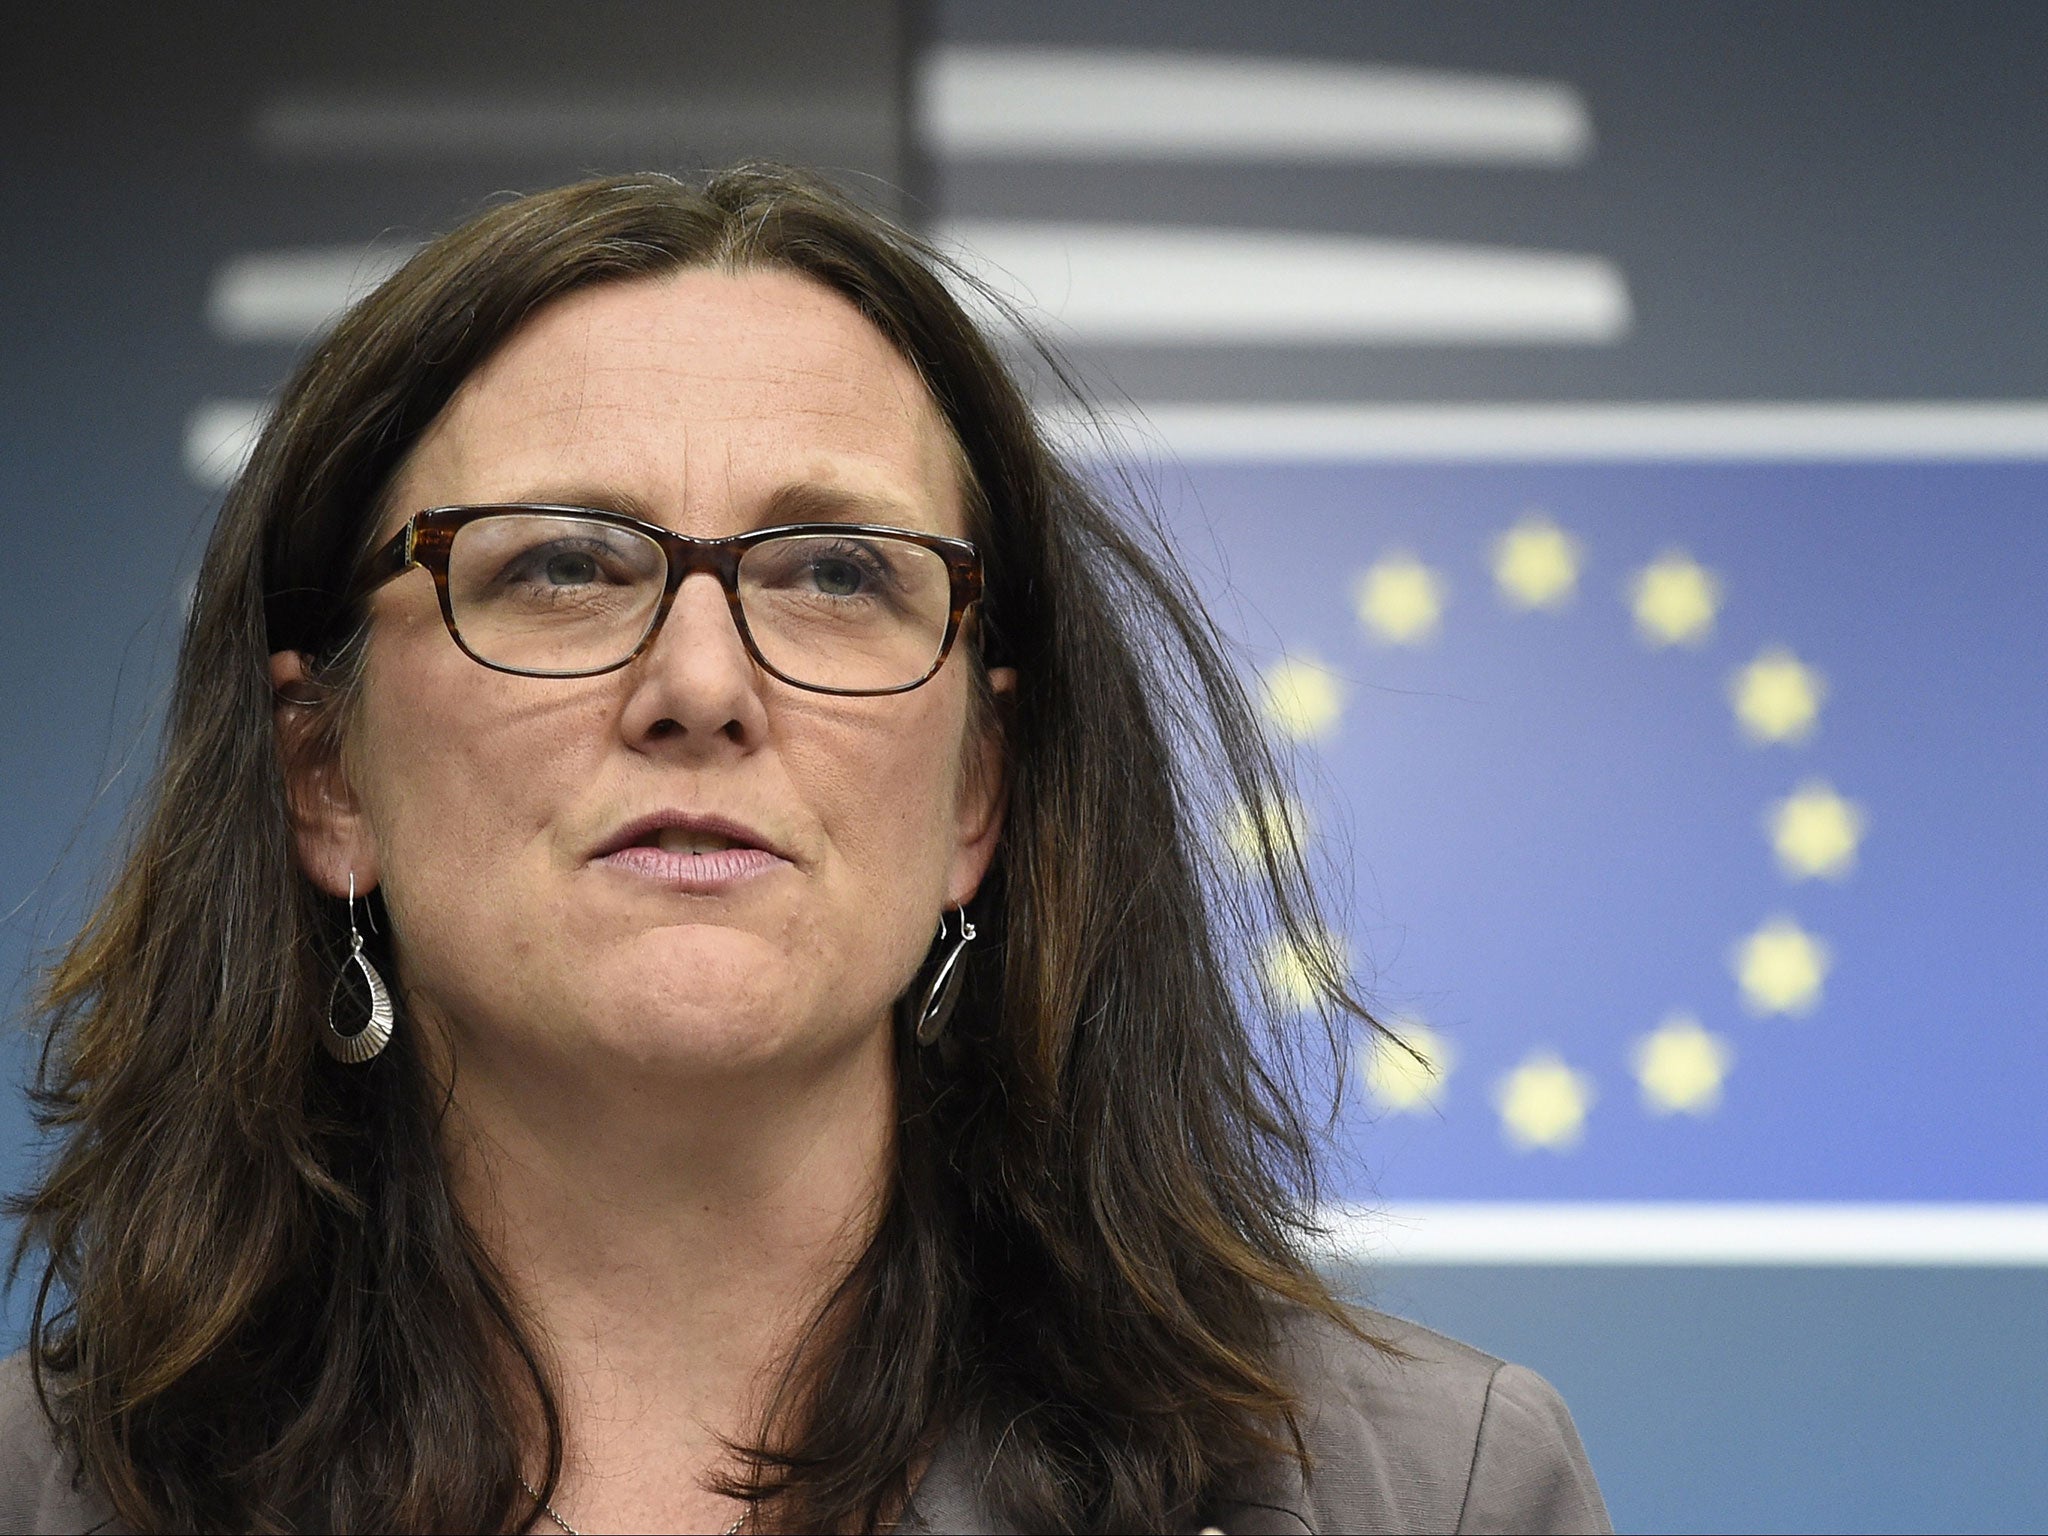 EU Commissioner of Trade Cecilia Malmstrom